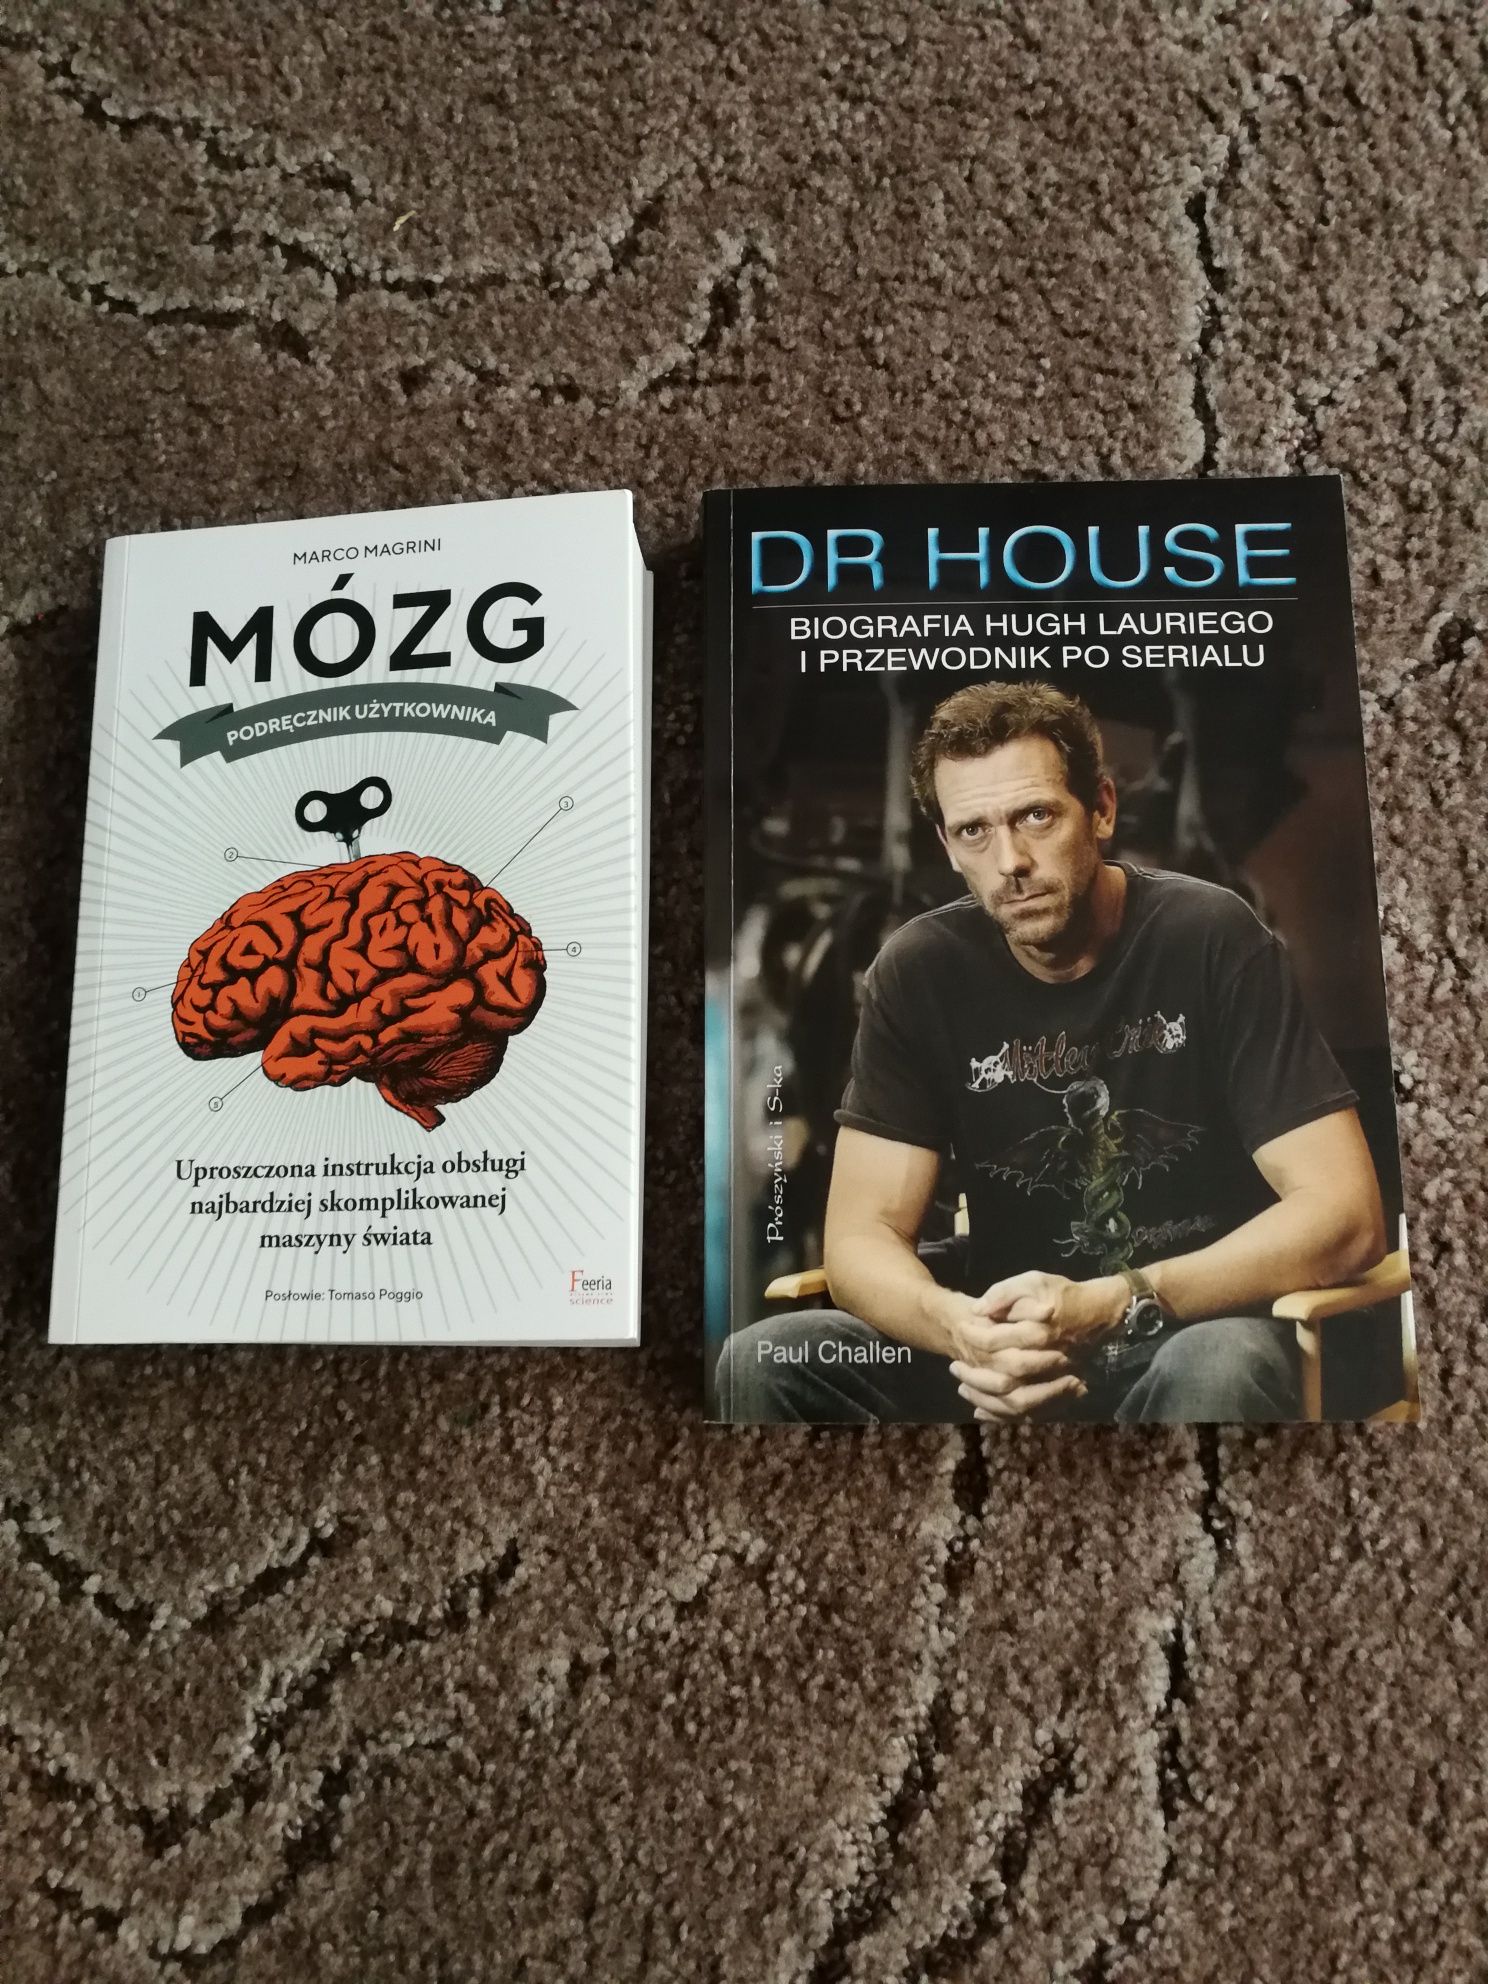 Książki Mózg i Dr House